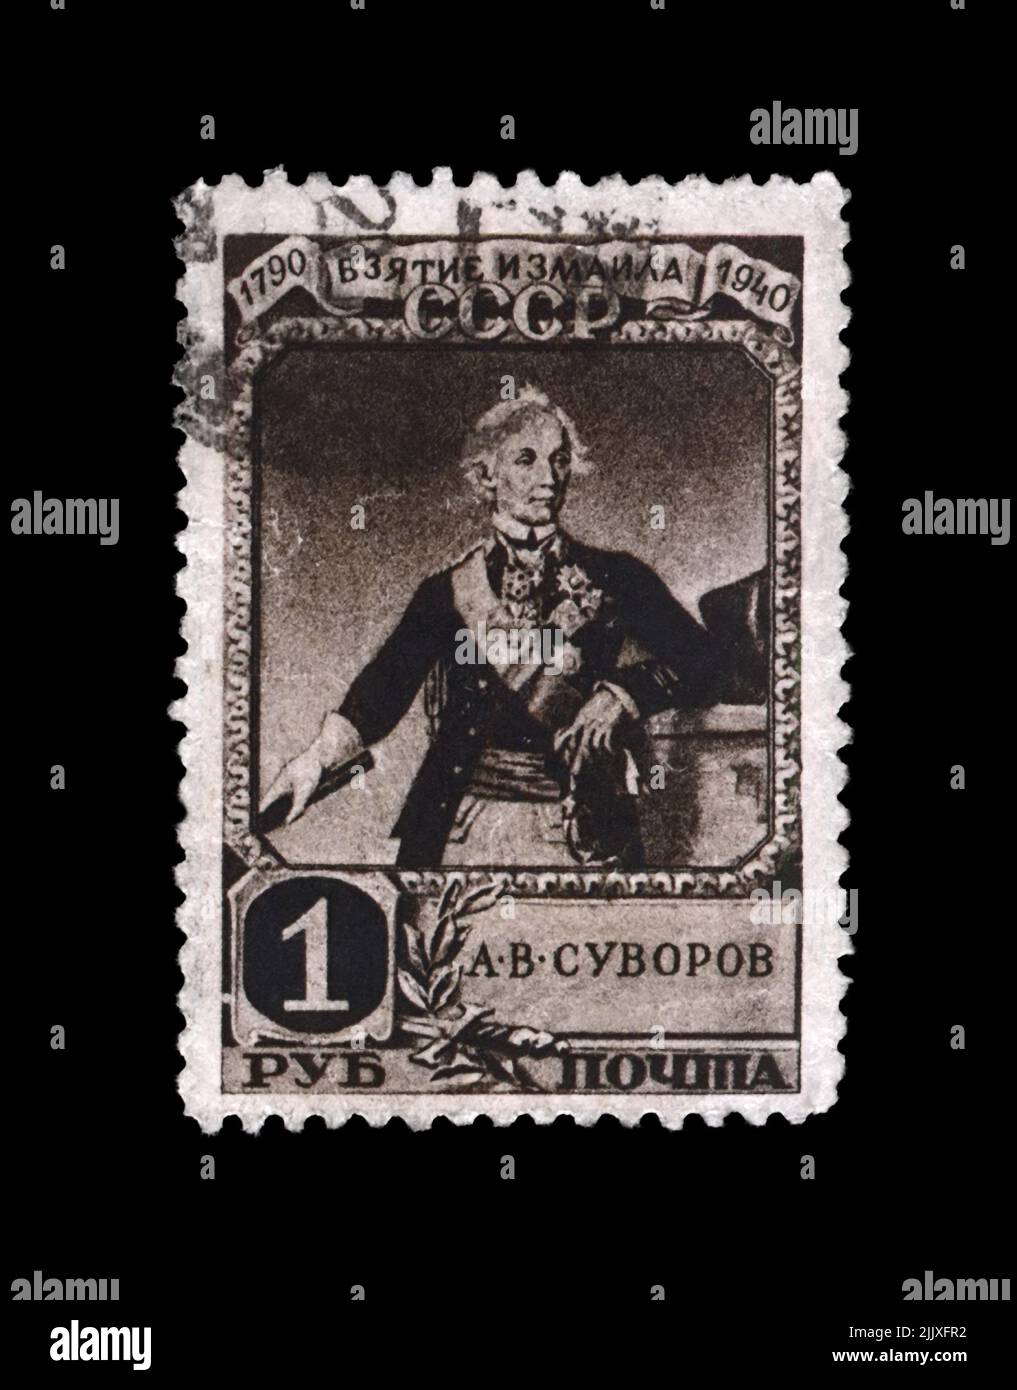 Alexander Suworow (1730-1800), berühmter russischer Militärkommandant, Marschall; 150.. Jahrestag der Eroberung der türkischen Festung Ismail, um 1941 Stockfoto